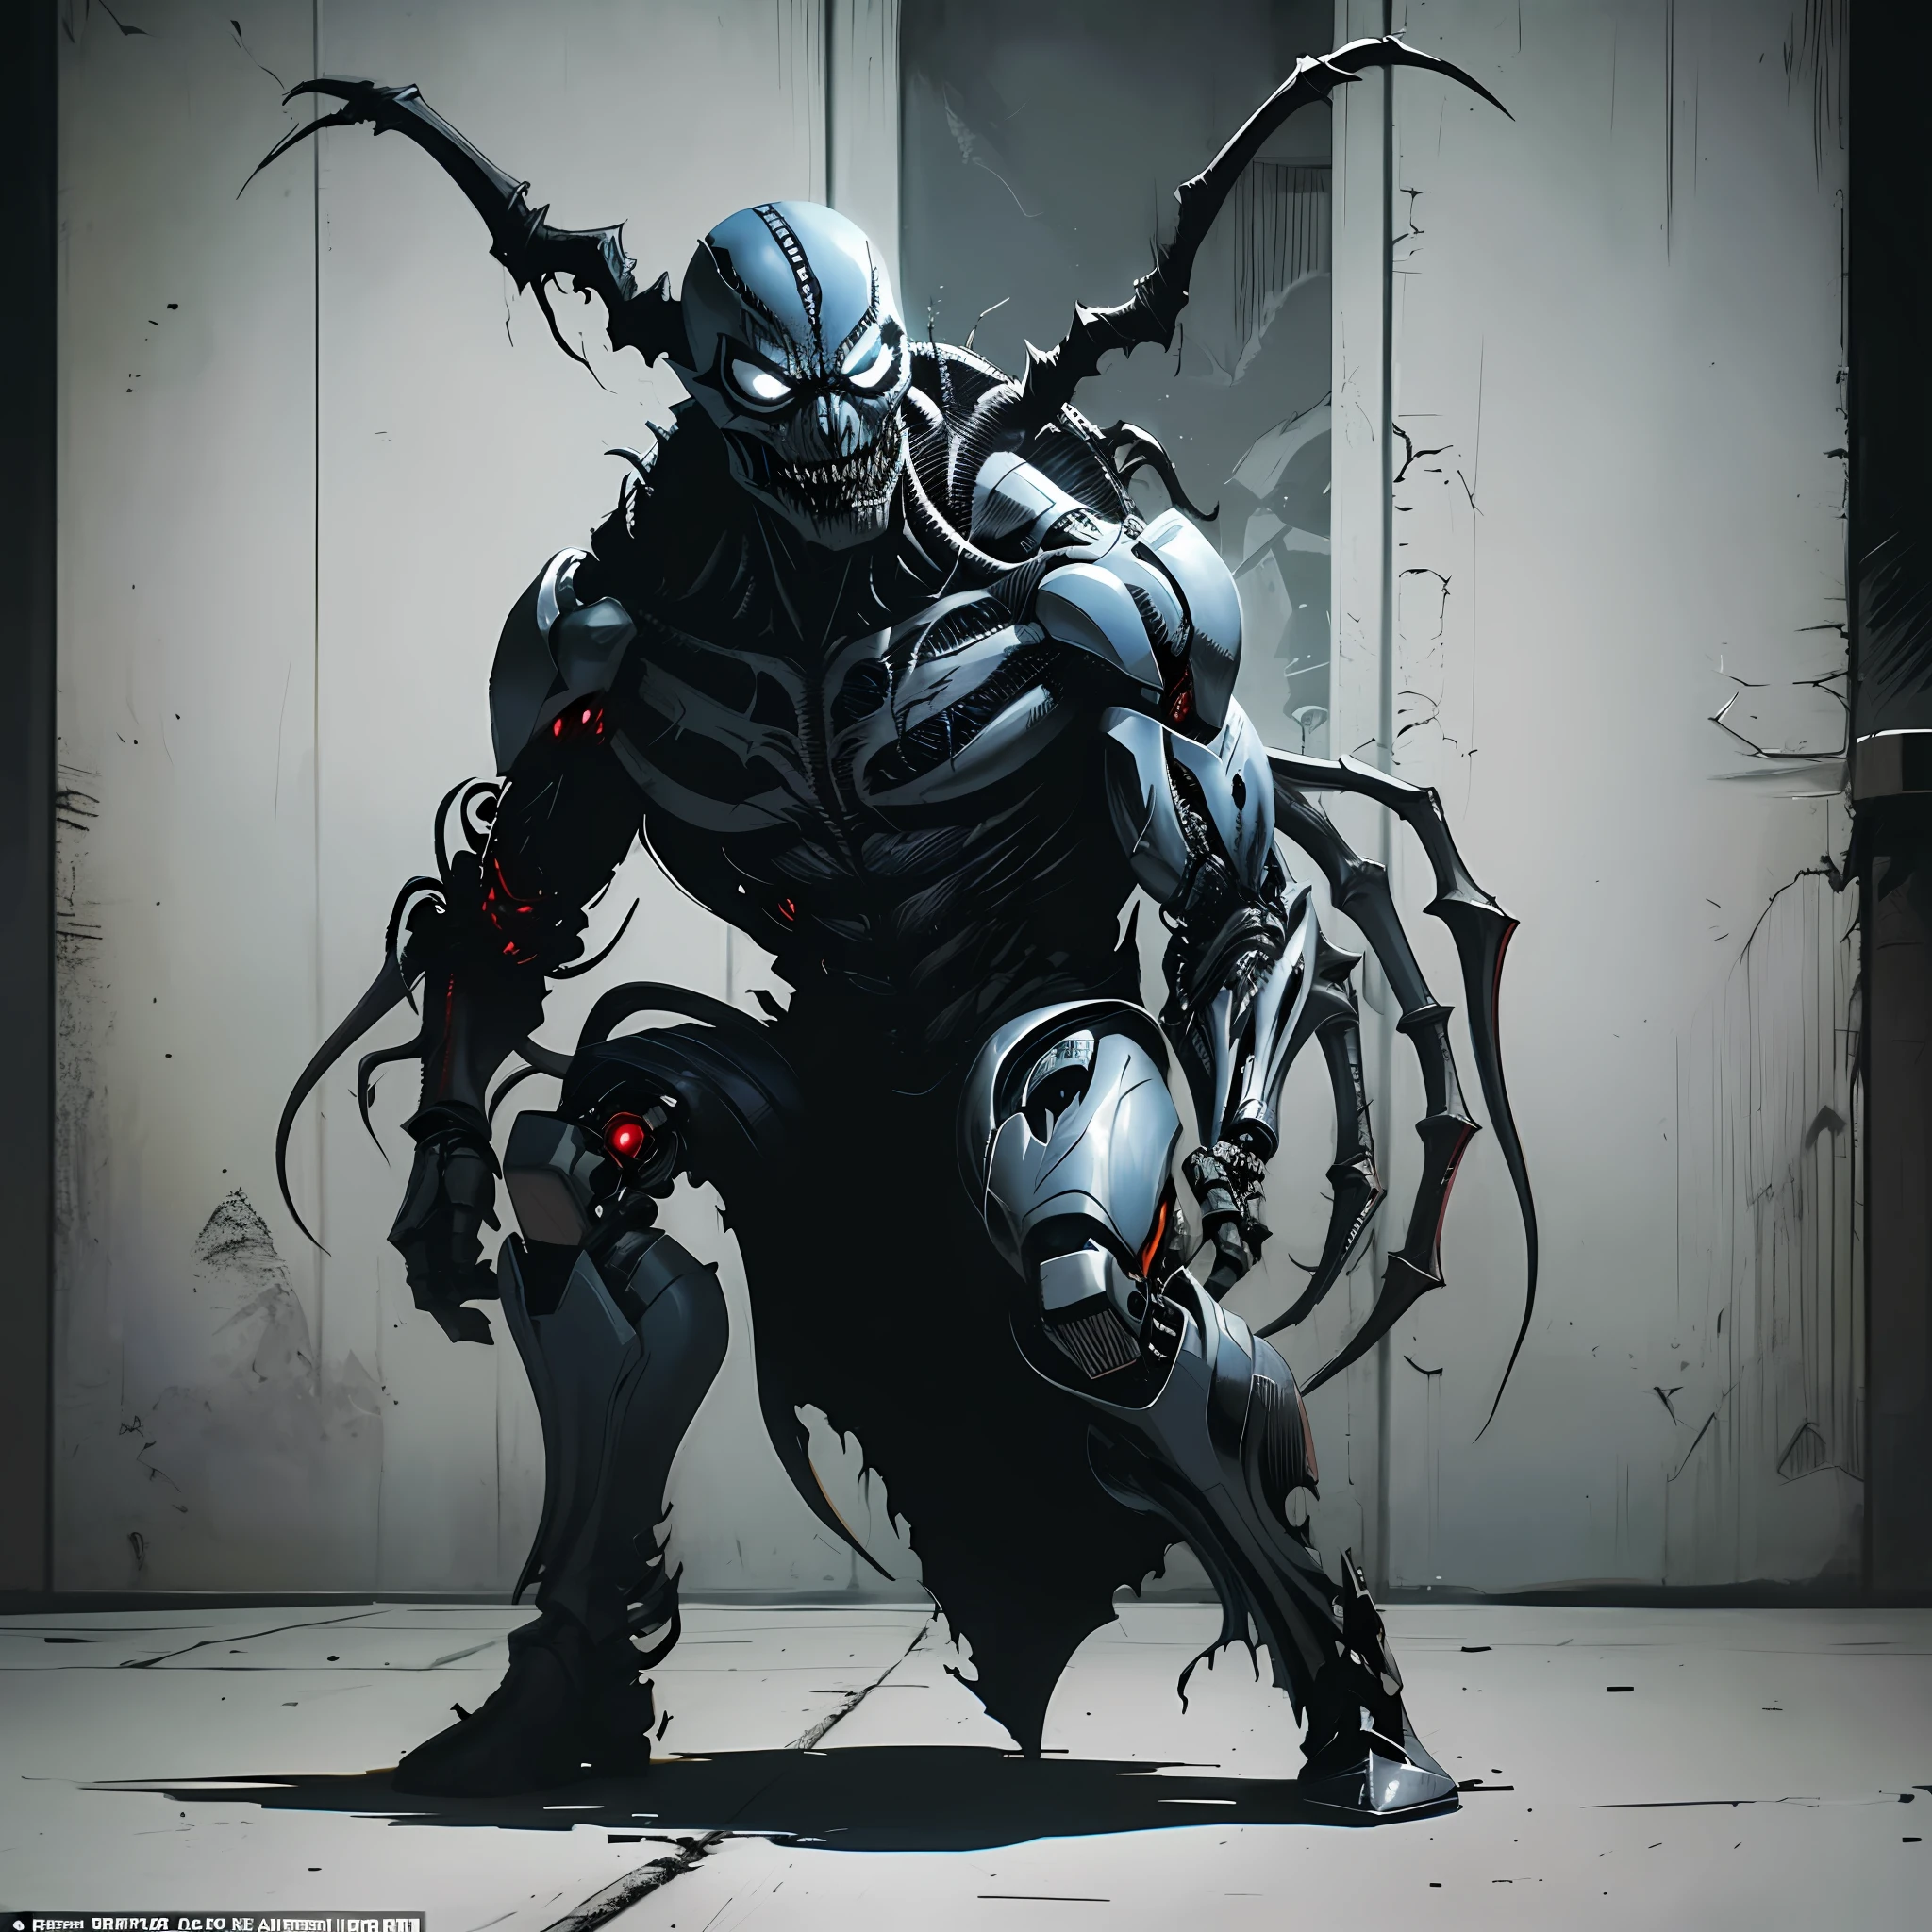 感染毒液共生体的外表阴险的机器人恶魔产物, 灵感来自 Todd McFarlane 的艺术作品, 捕捉 Image Comics 和 DC Comics 的黑暗和坚韧氛围. 充满动感的战场镜头, 描绘出一种可怕而邪恶的存在. 单个角色全身渲染, 杰作